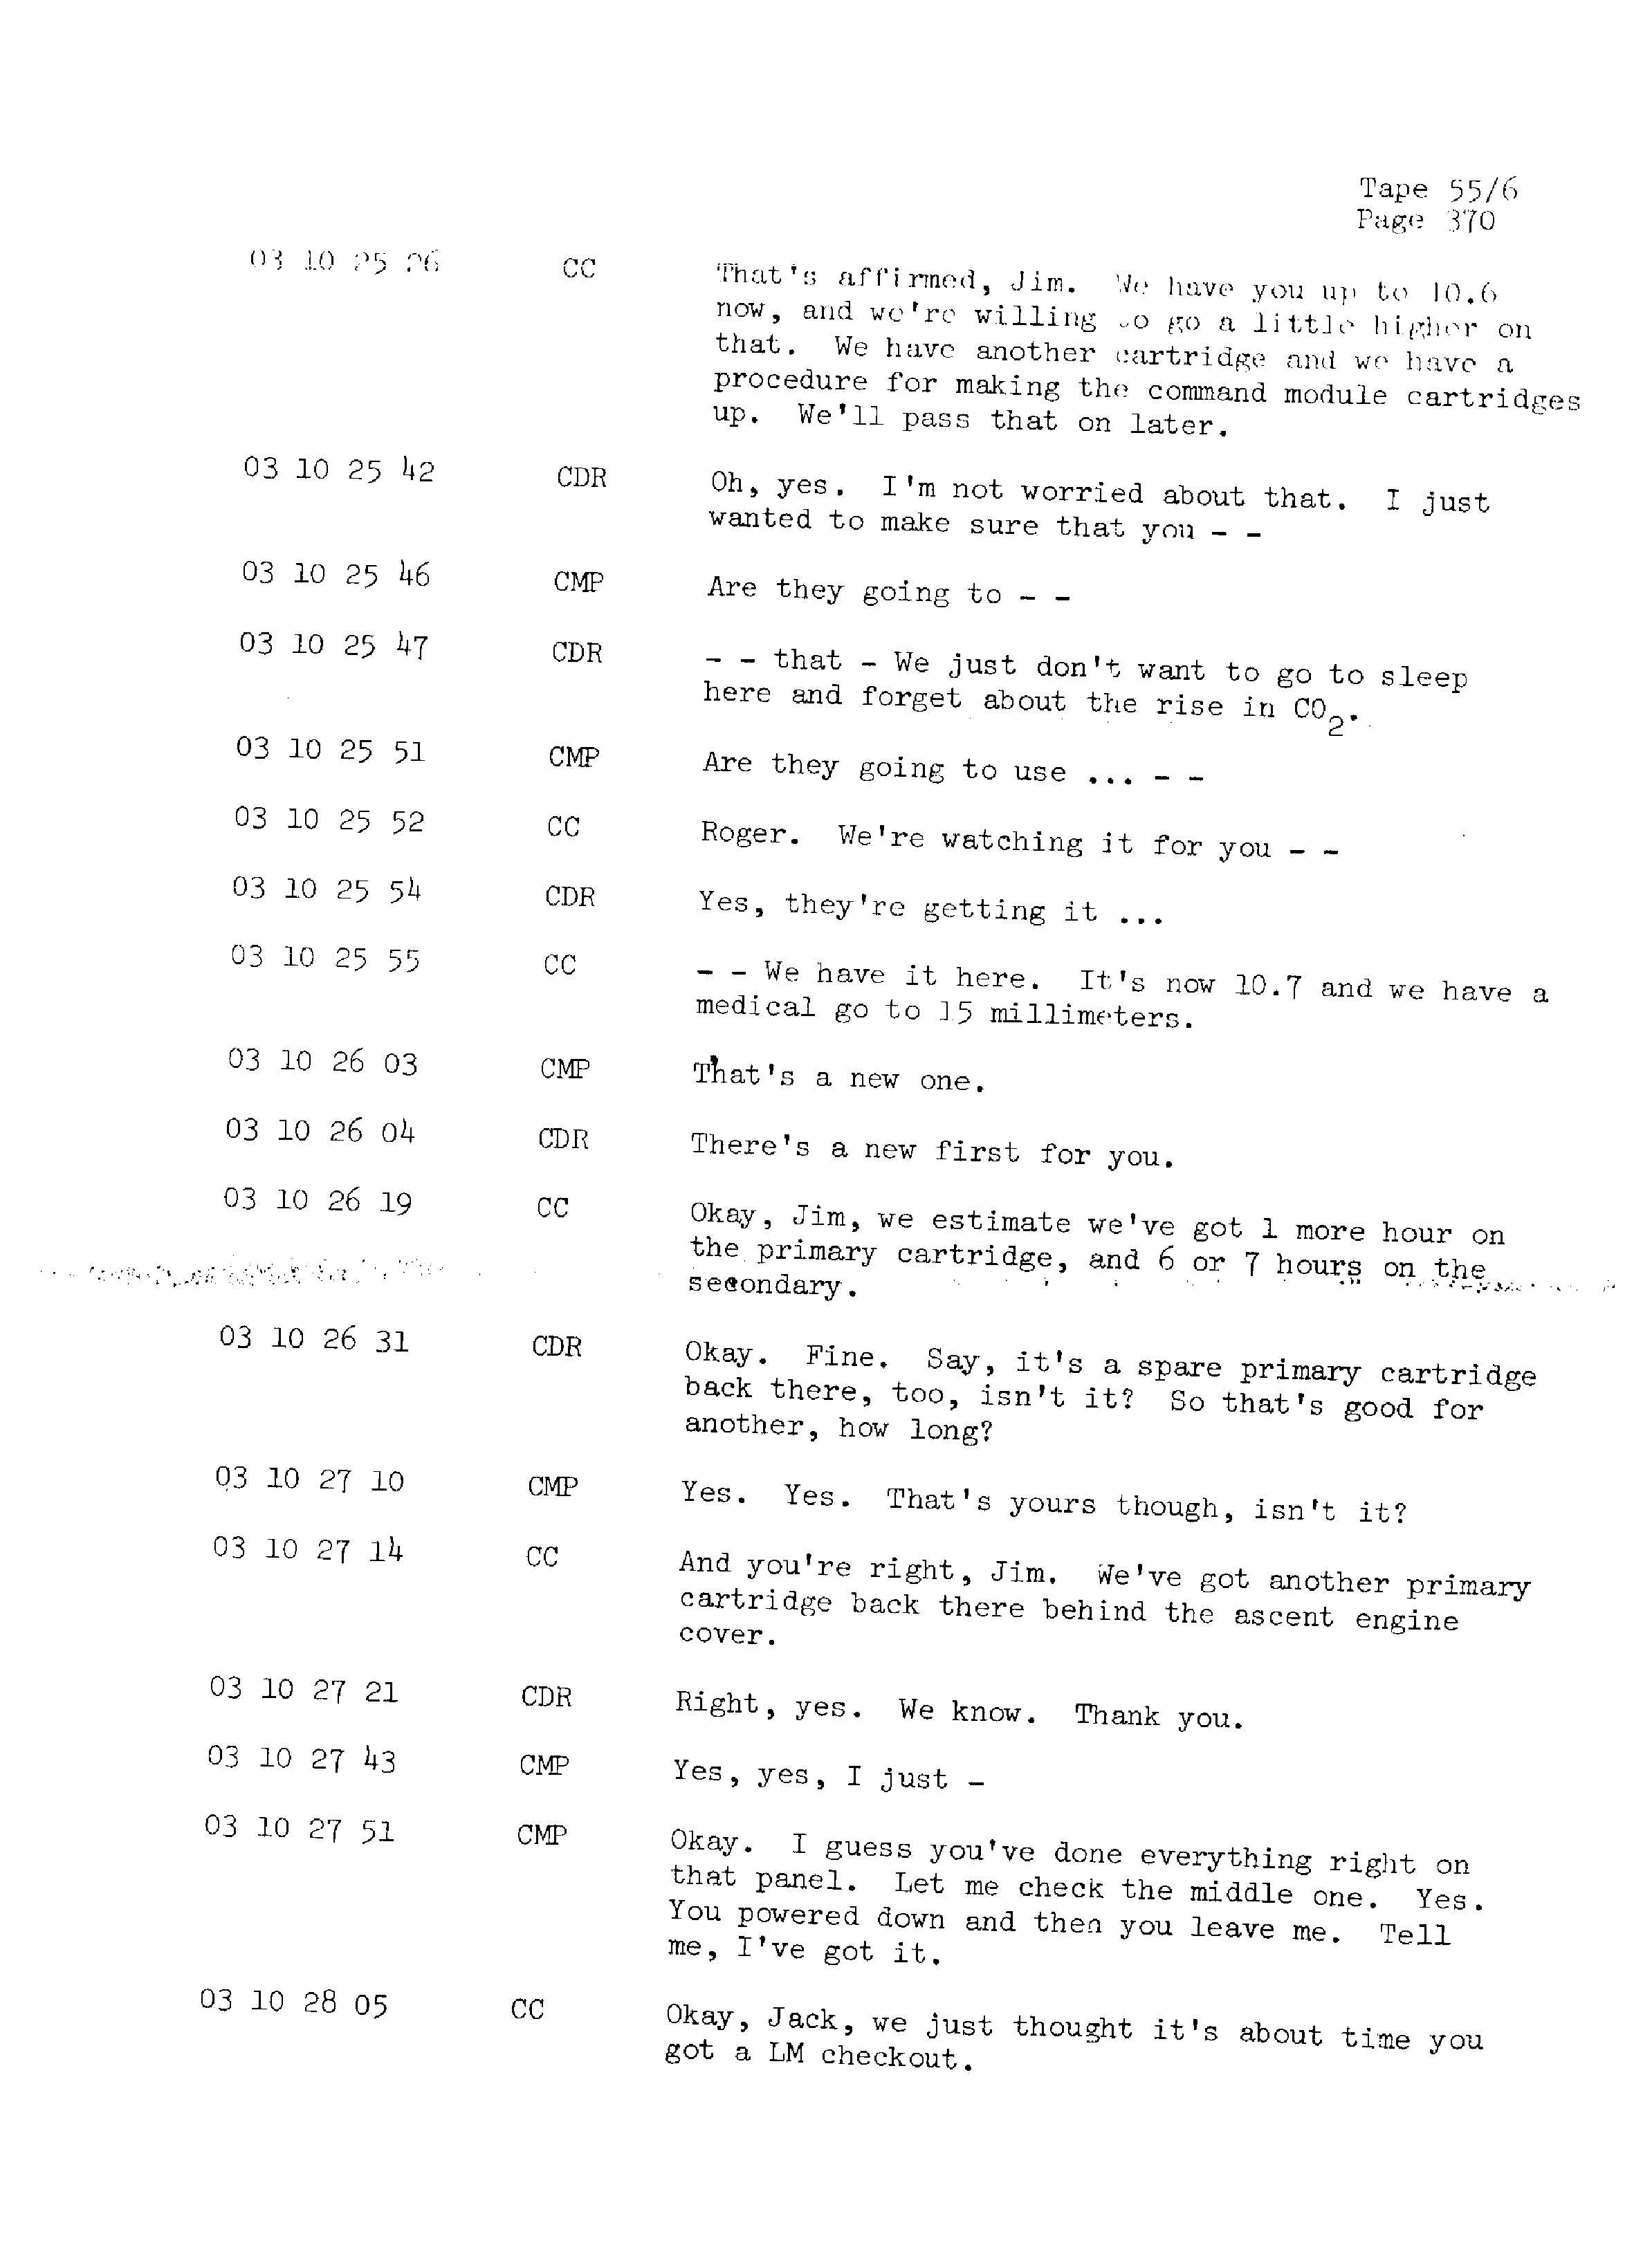 Page 377 of Apollo 13’s original transcript